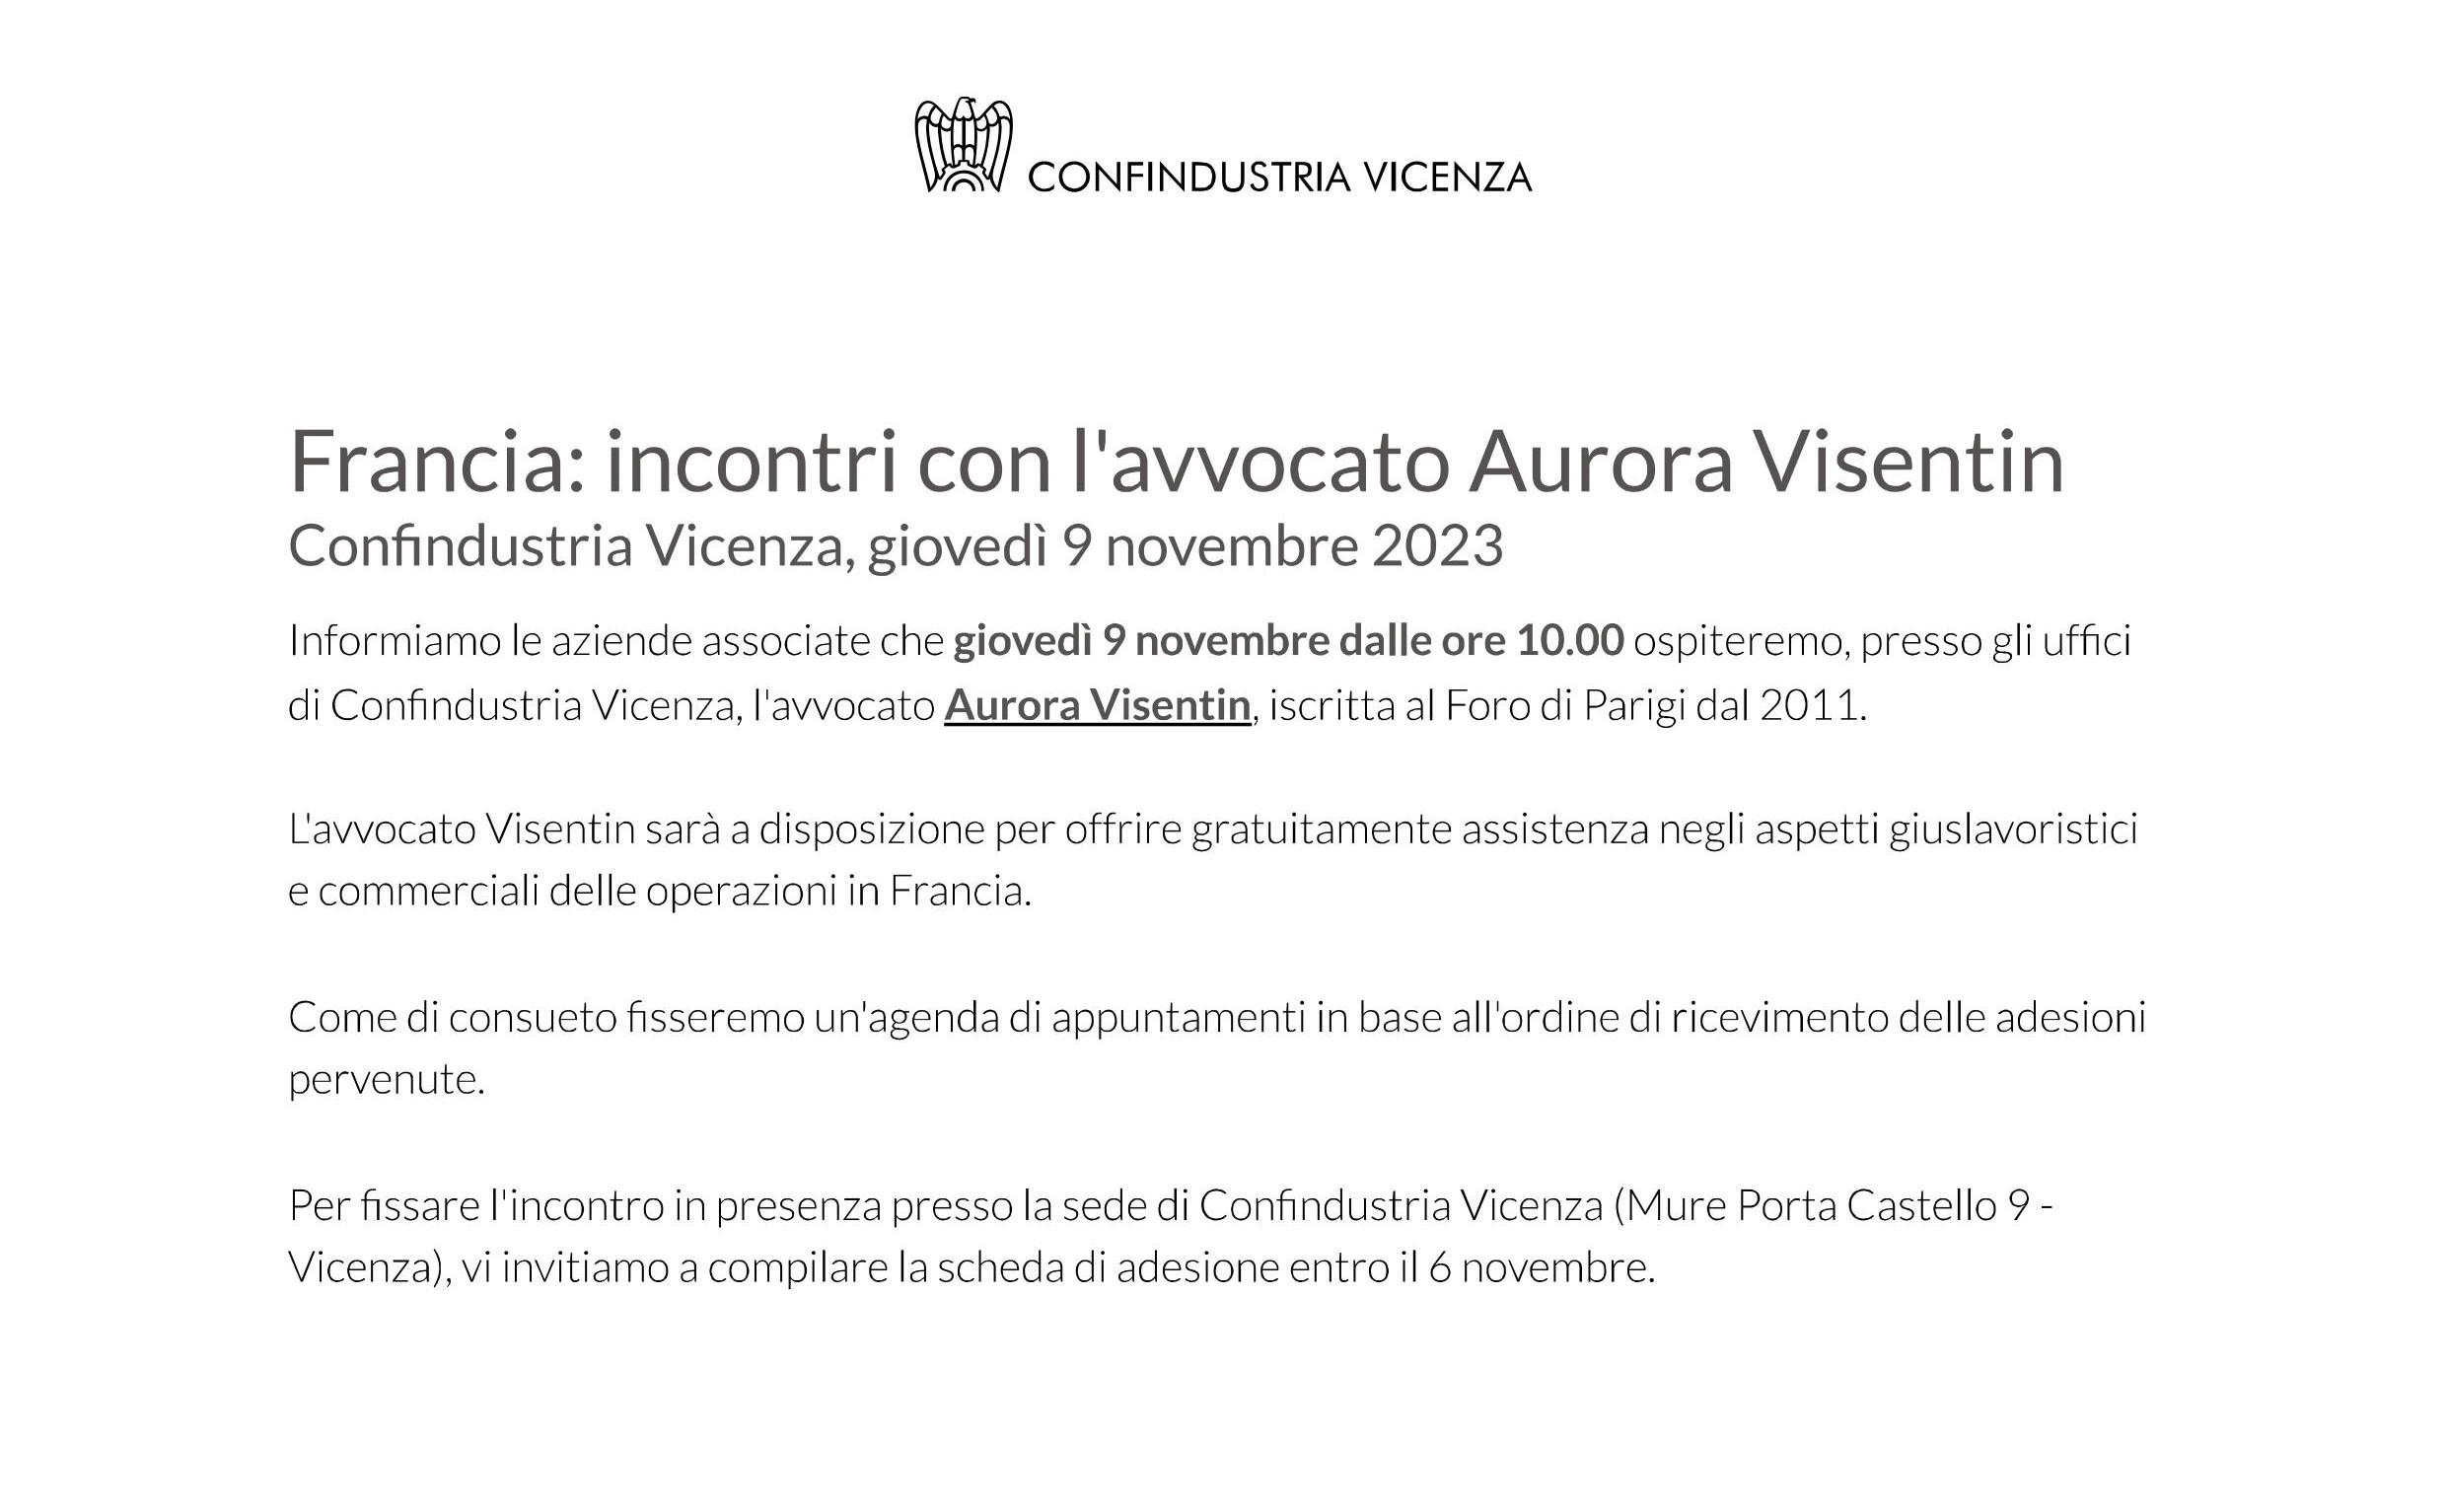 9 Novembre 2023: Confindustria Vicenza